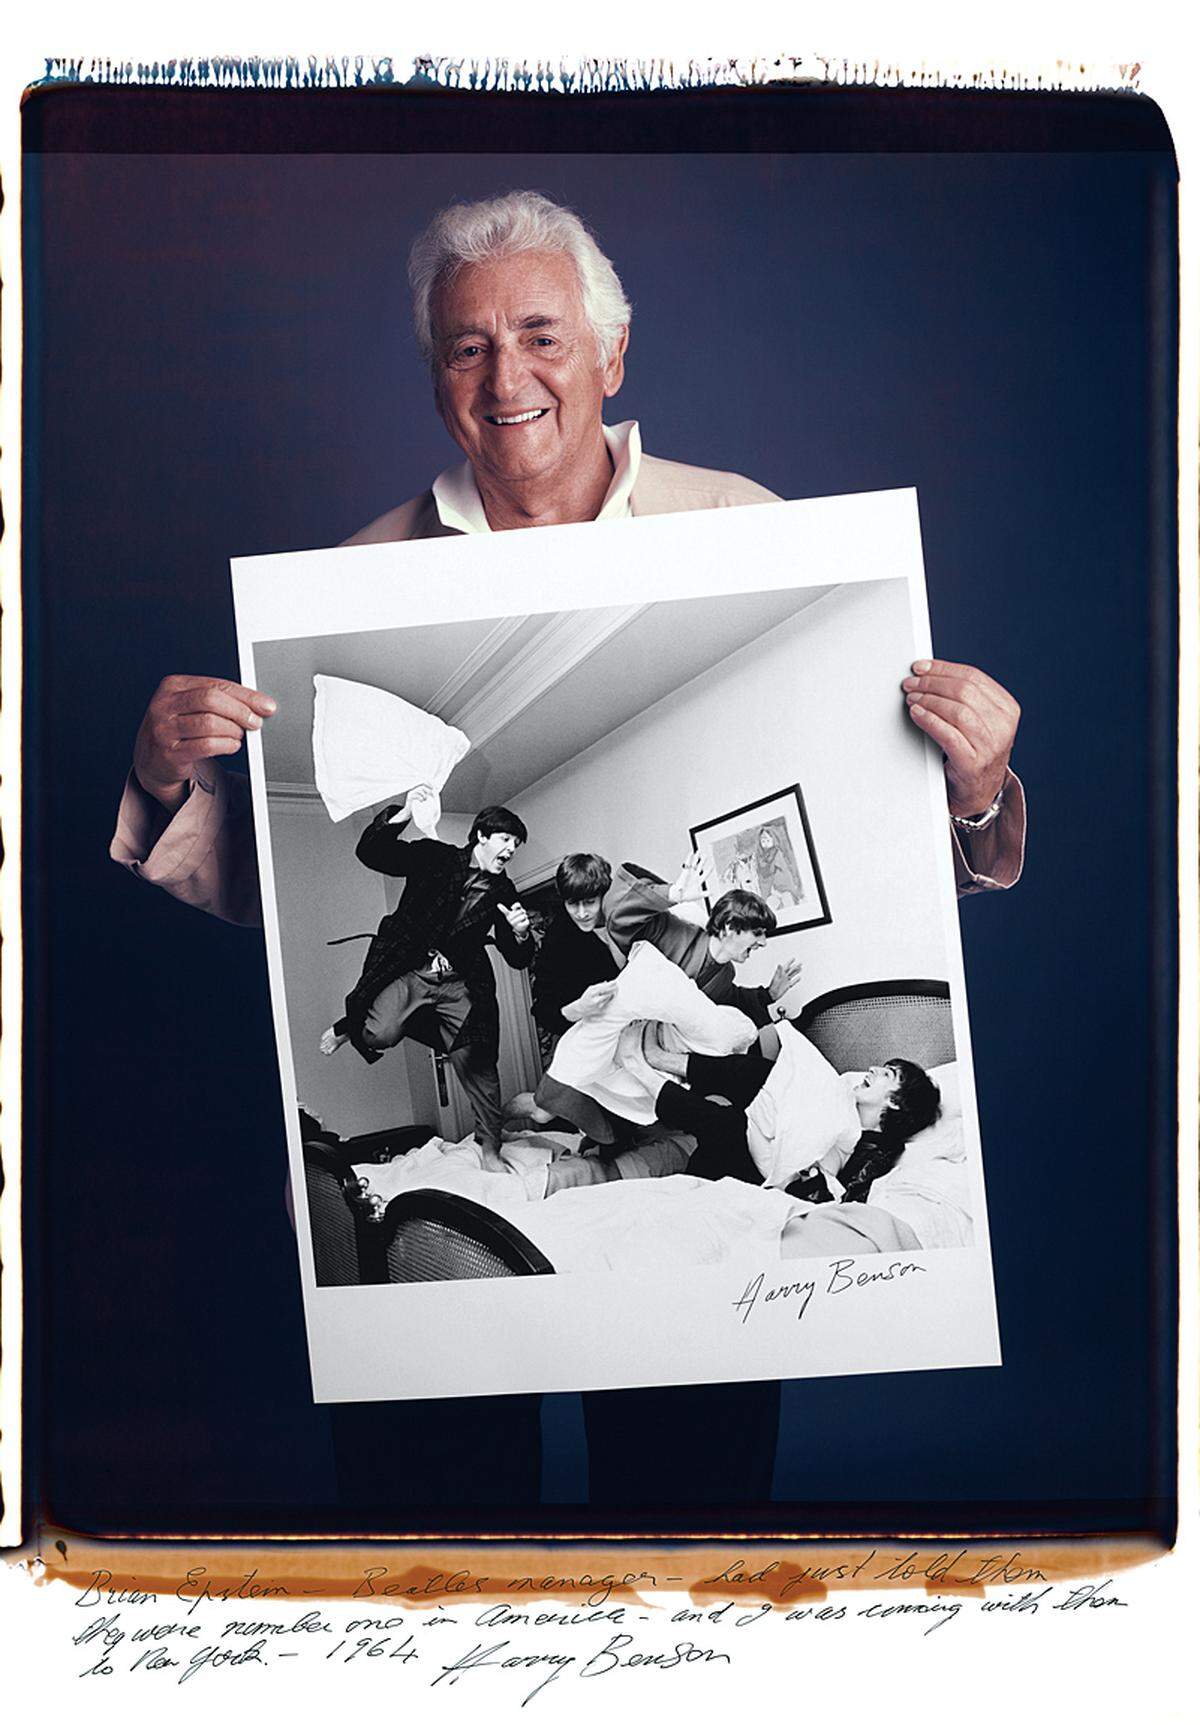 Harry Benson fotografierte die Beatles 1964. "Brian Epstein (Der Manager der Beatles, Anm.) hatte ihnen gerade erzählt, dass sie in Amerika Nummer eins sind", so Benson über das Foto.